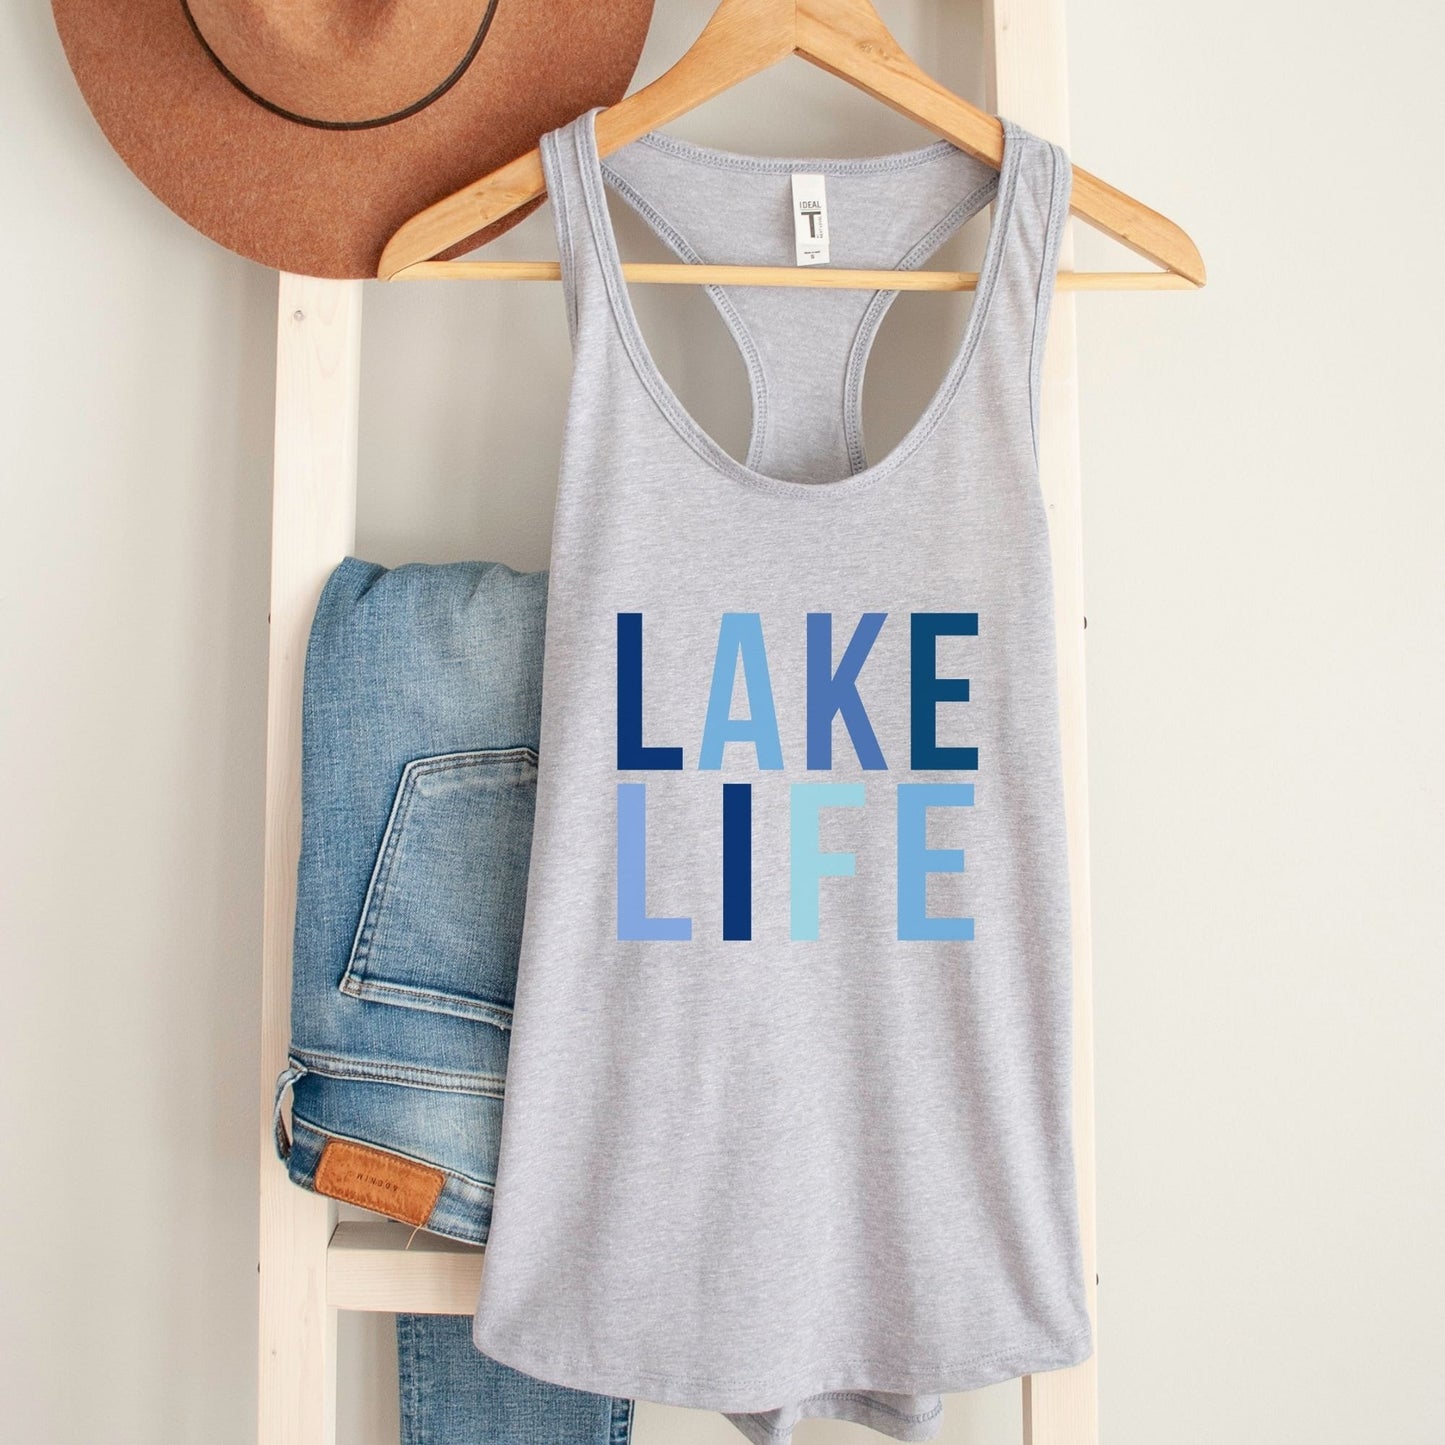 Lake Life Shirt, Summer Tank Top, Cottage Tank Top, Summer Clothing for Women, Lake Trip Shirt, Road Trip Shirt